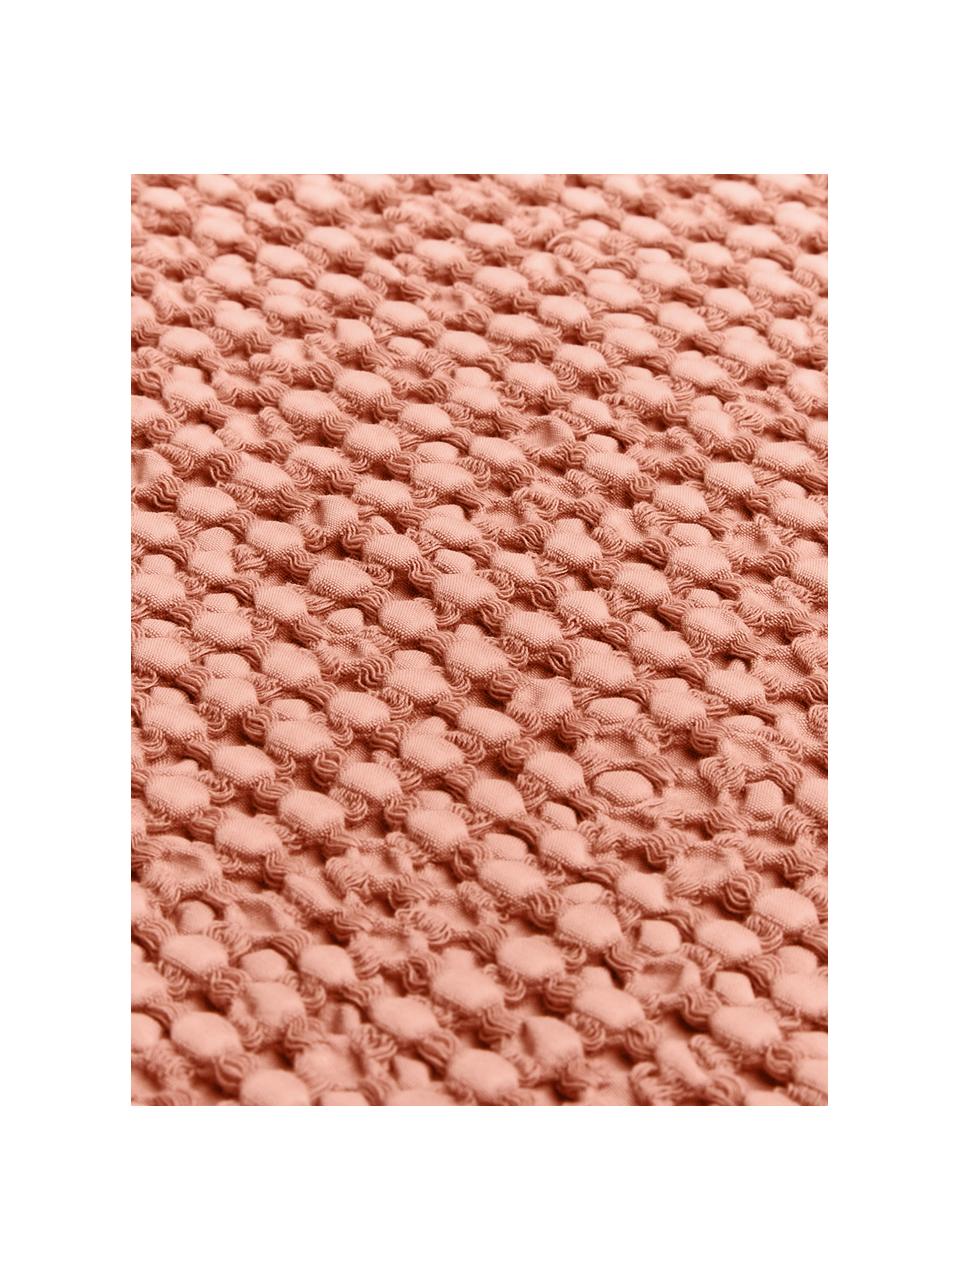 Tagesdecke Vigo mit strukturierter Oberfläche, 100% Baumwolle, Helles Rosa, B 220 x L 240 cm (für Betten bis 180 x 200 cm)